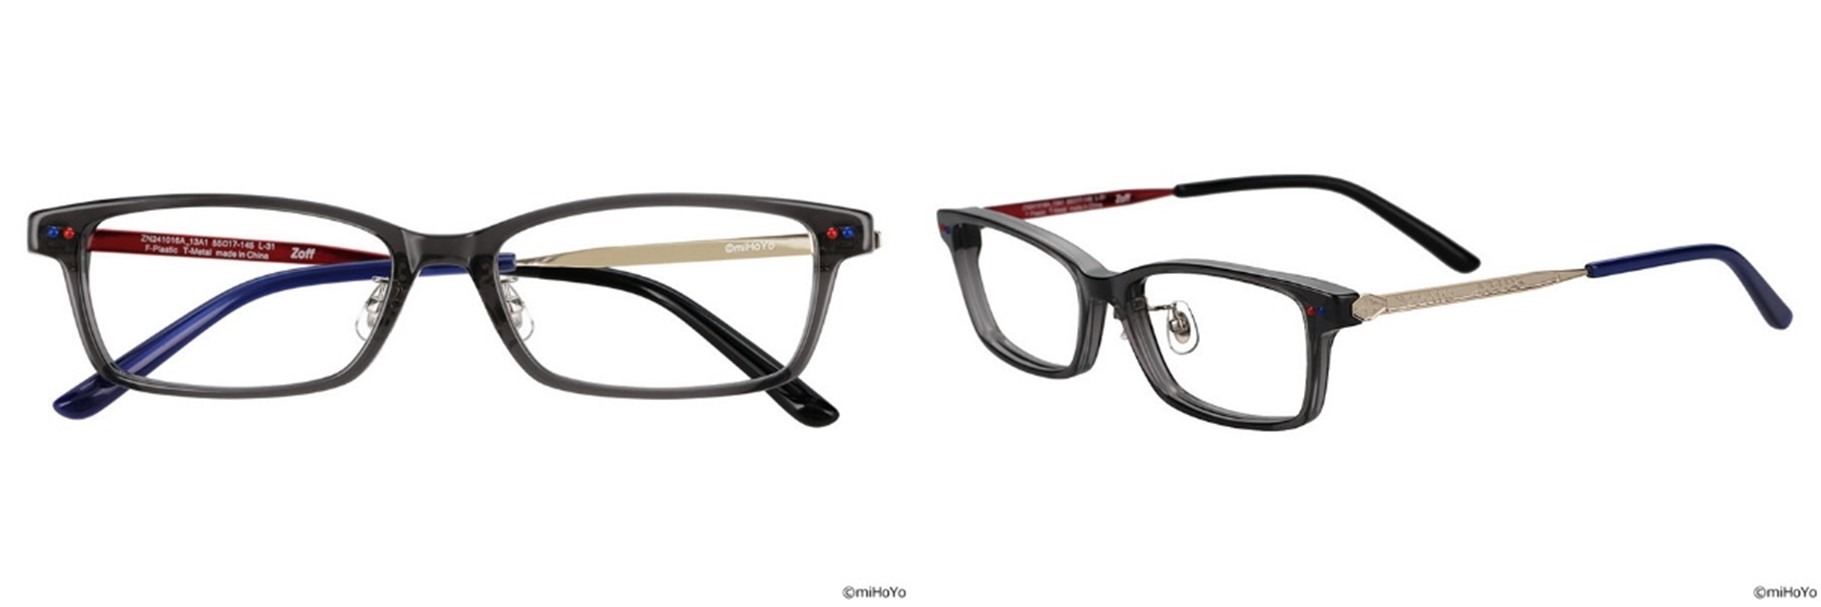 《崩坏：星穹铁道》xZoff联名眼镜今日开放预购公开四种联名眼镜款式